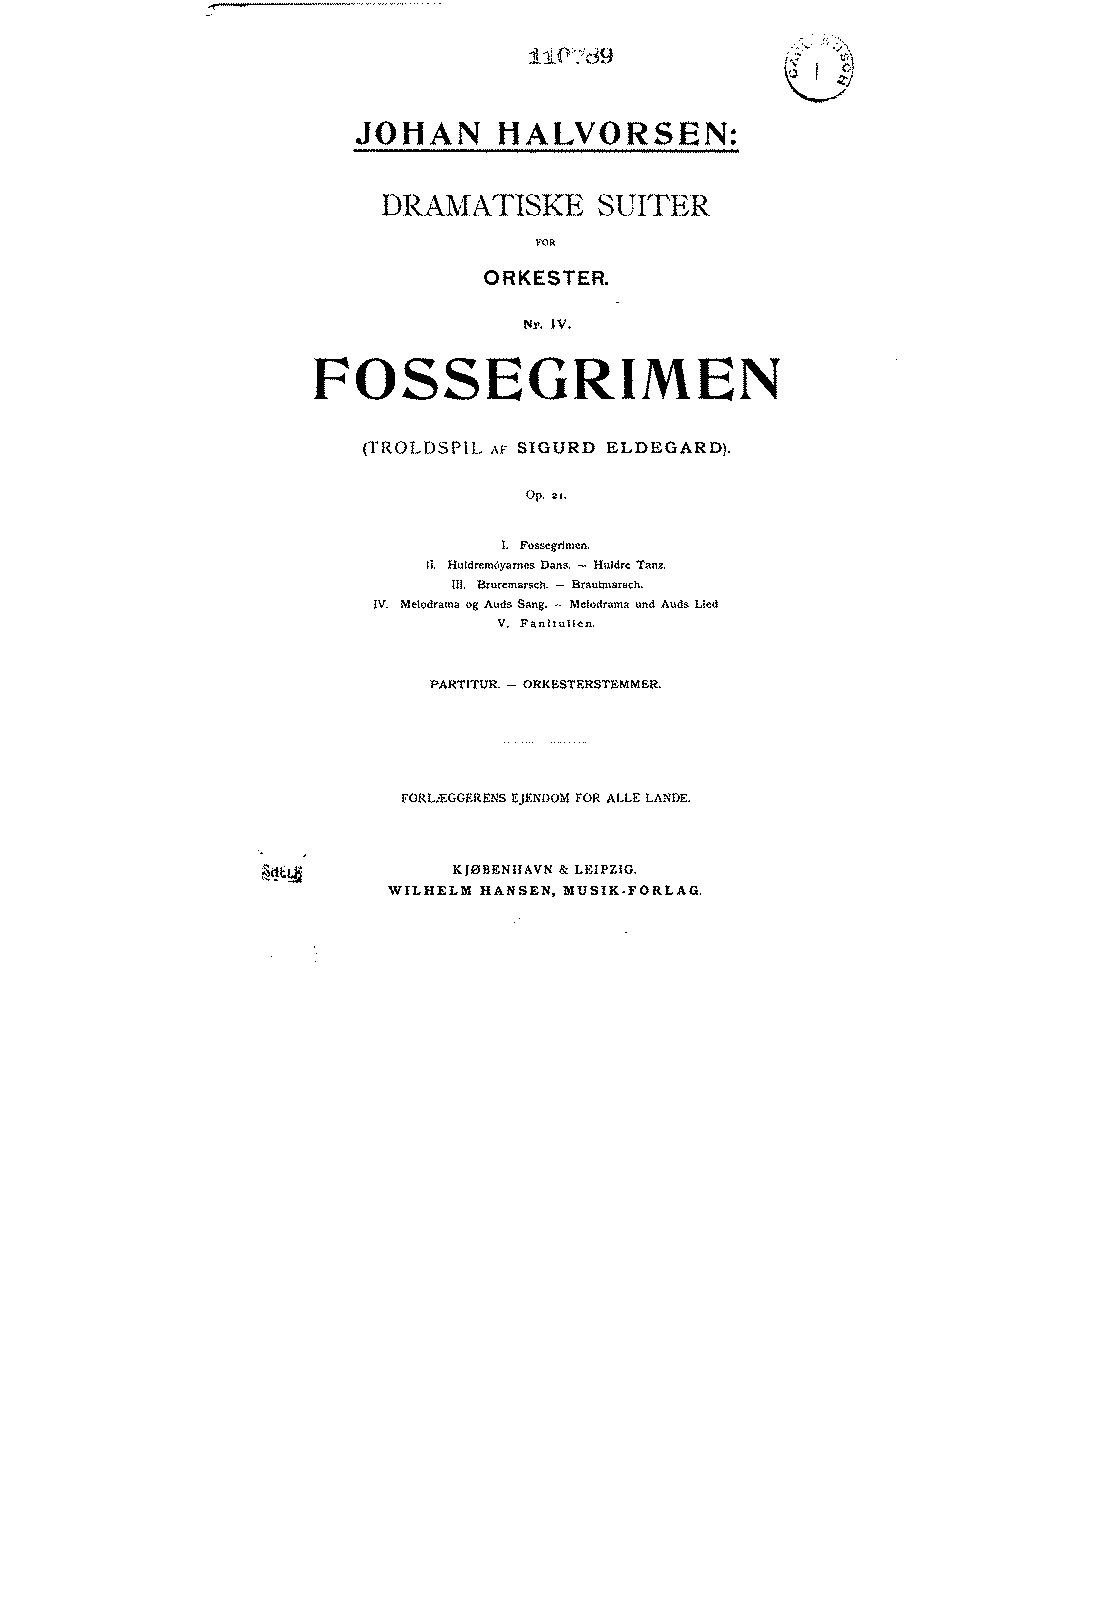 Fossegrimen, Op.21 (Halvorsen, Johan) - IMSLP